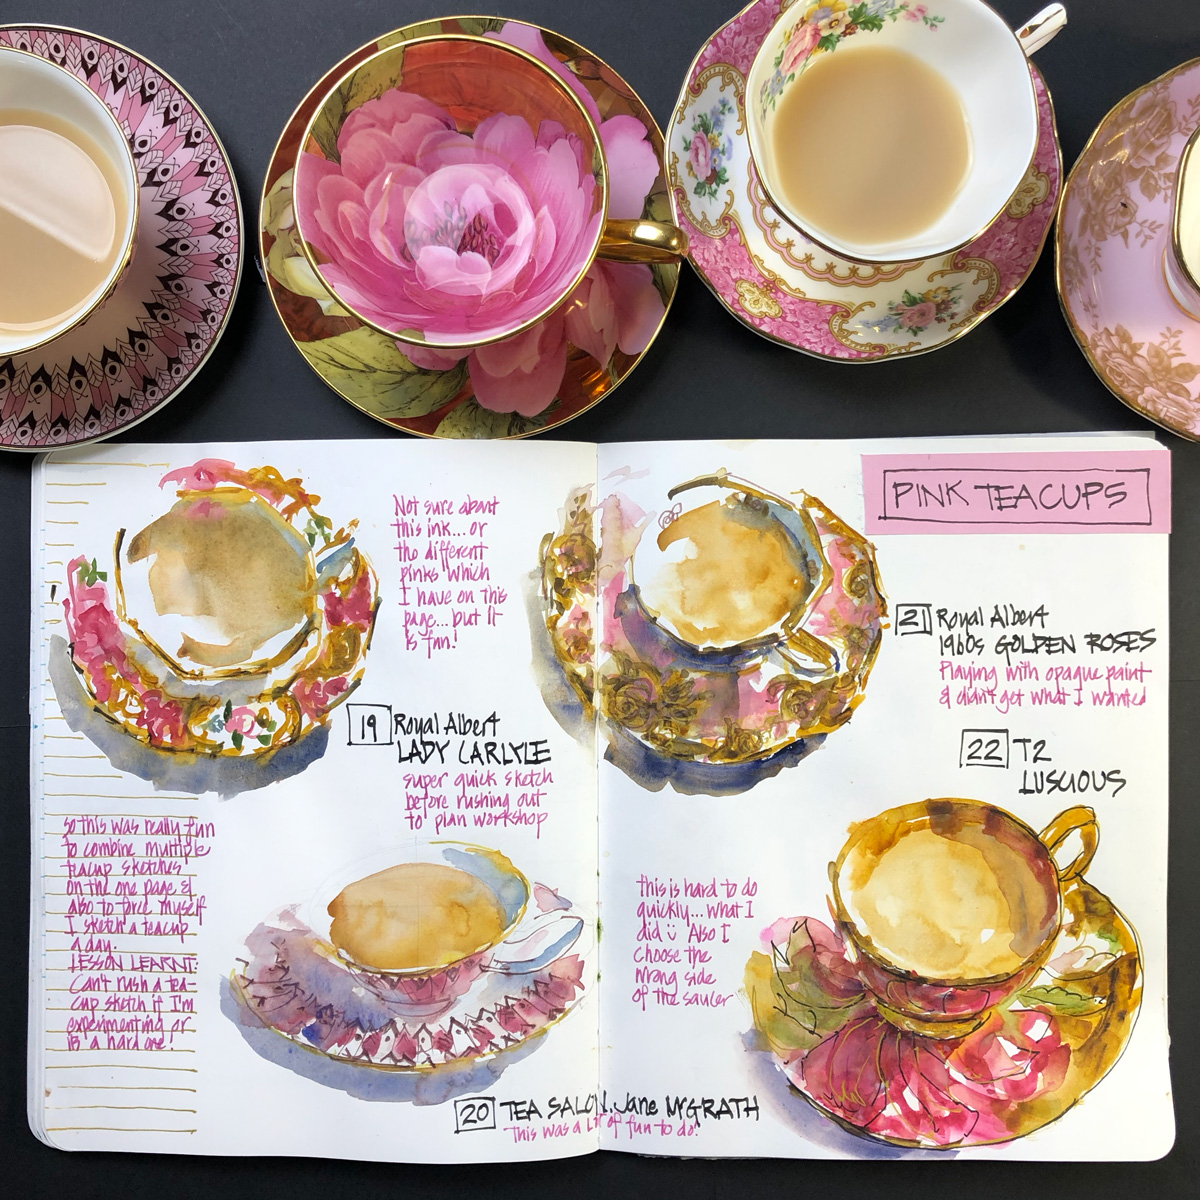 https://www.lizsteel.com/wp-content/uploads/2020/02/LizSteel-Pink-teacup-spread-photo.jpg